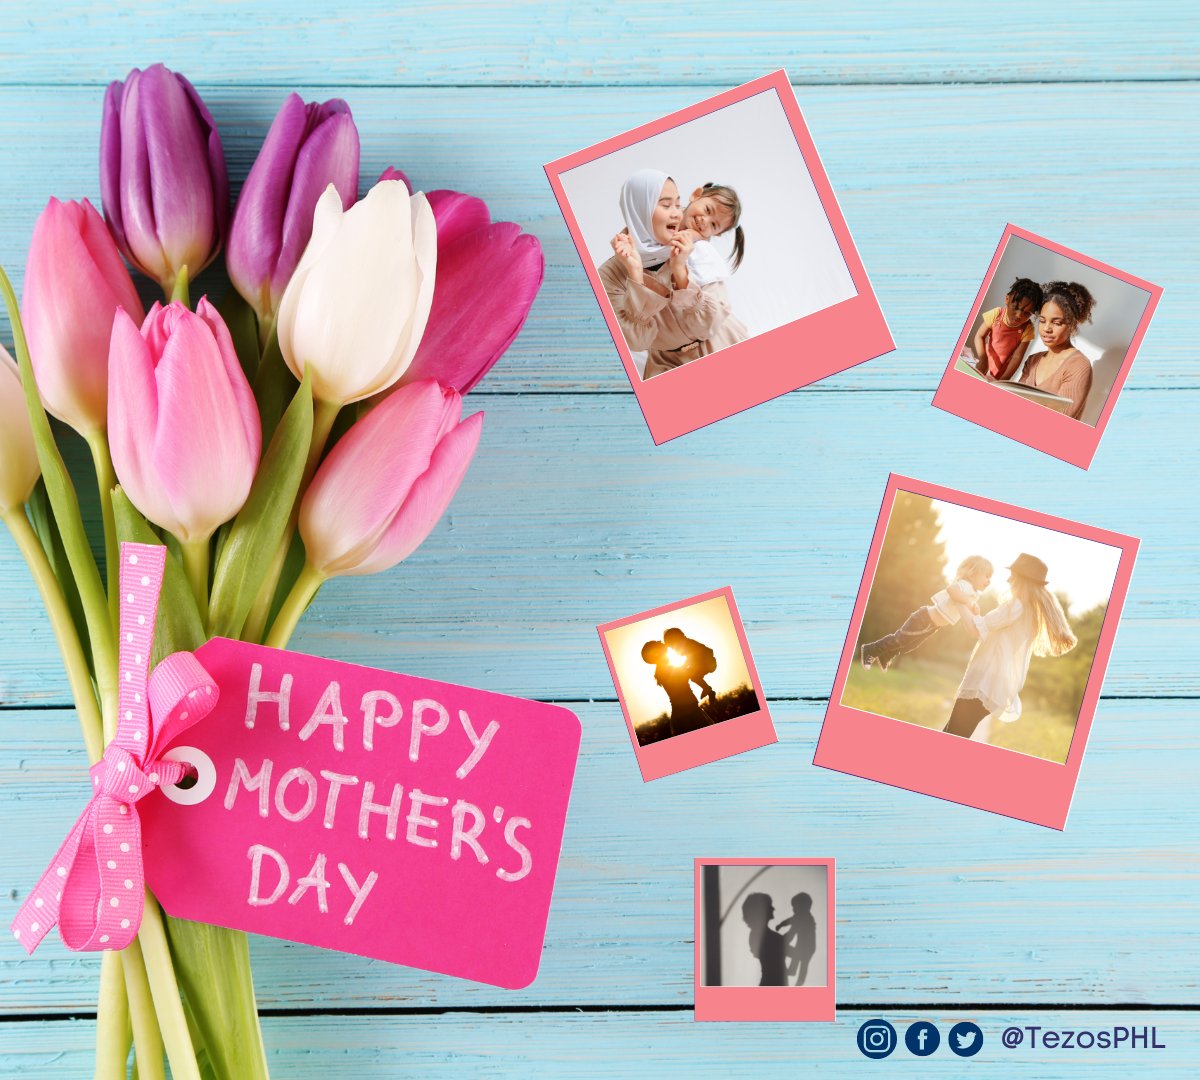 💐Sa bawat  nanay na nagbibigay ng pag-asa at inspirasyon, Pagpupugay sa  ilaw ng tahanan! 🌺

💕Happy Mother's Day!🤱

#Tezos #MothersDay2023